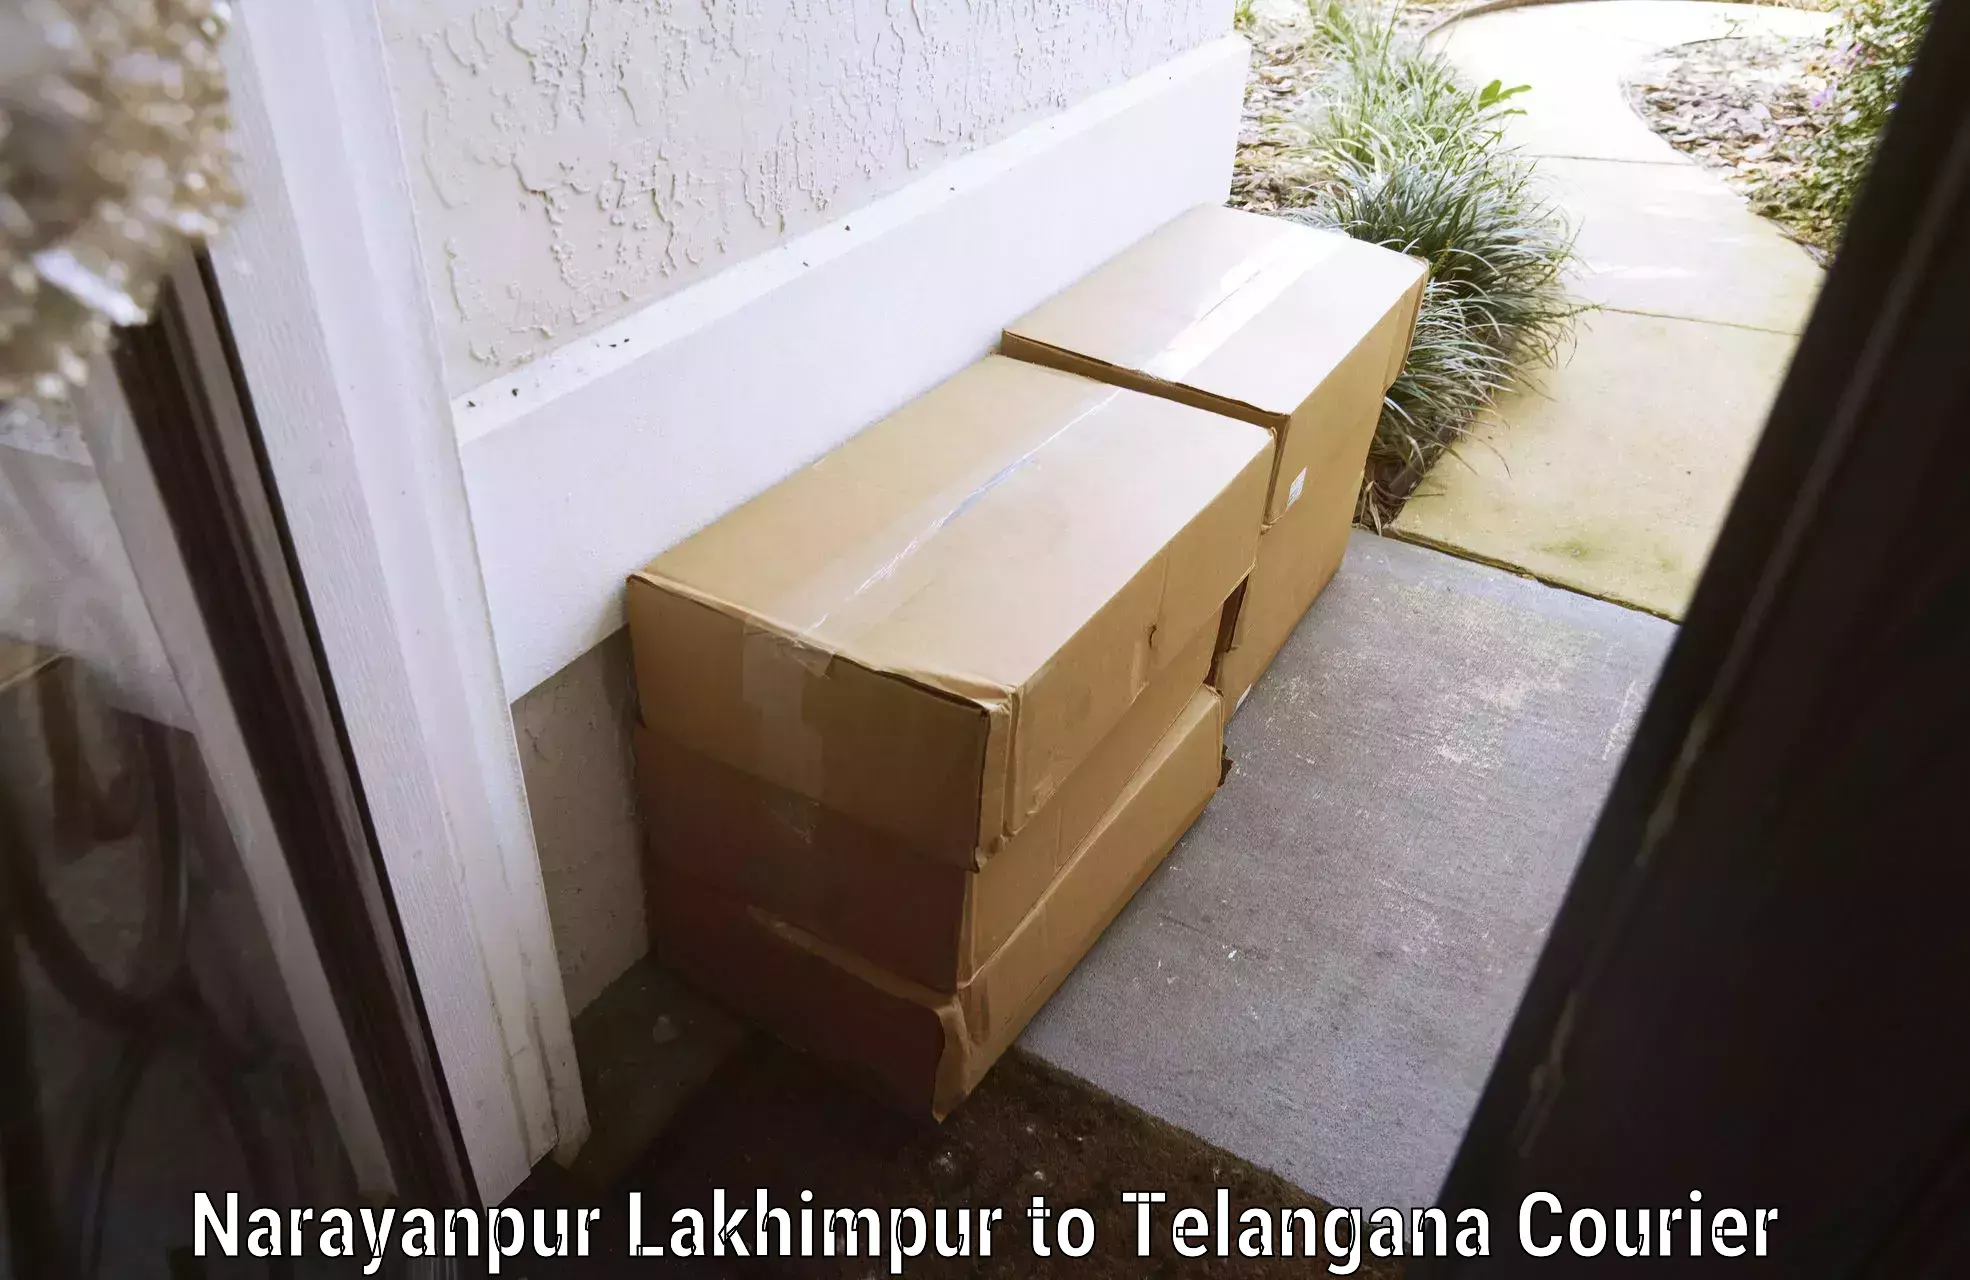 Online luggage shipping in Narayanpur Lakhimpur to Telangana